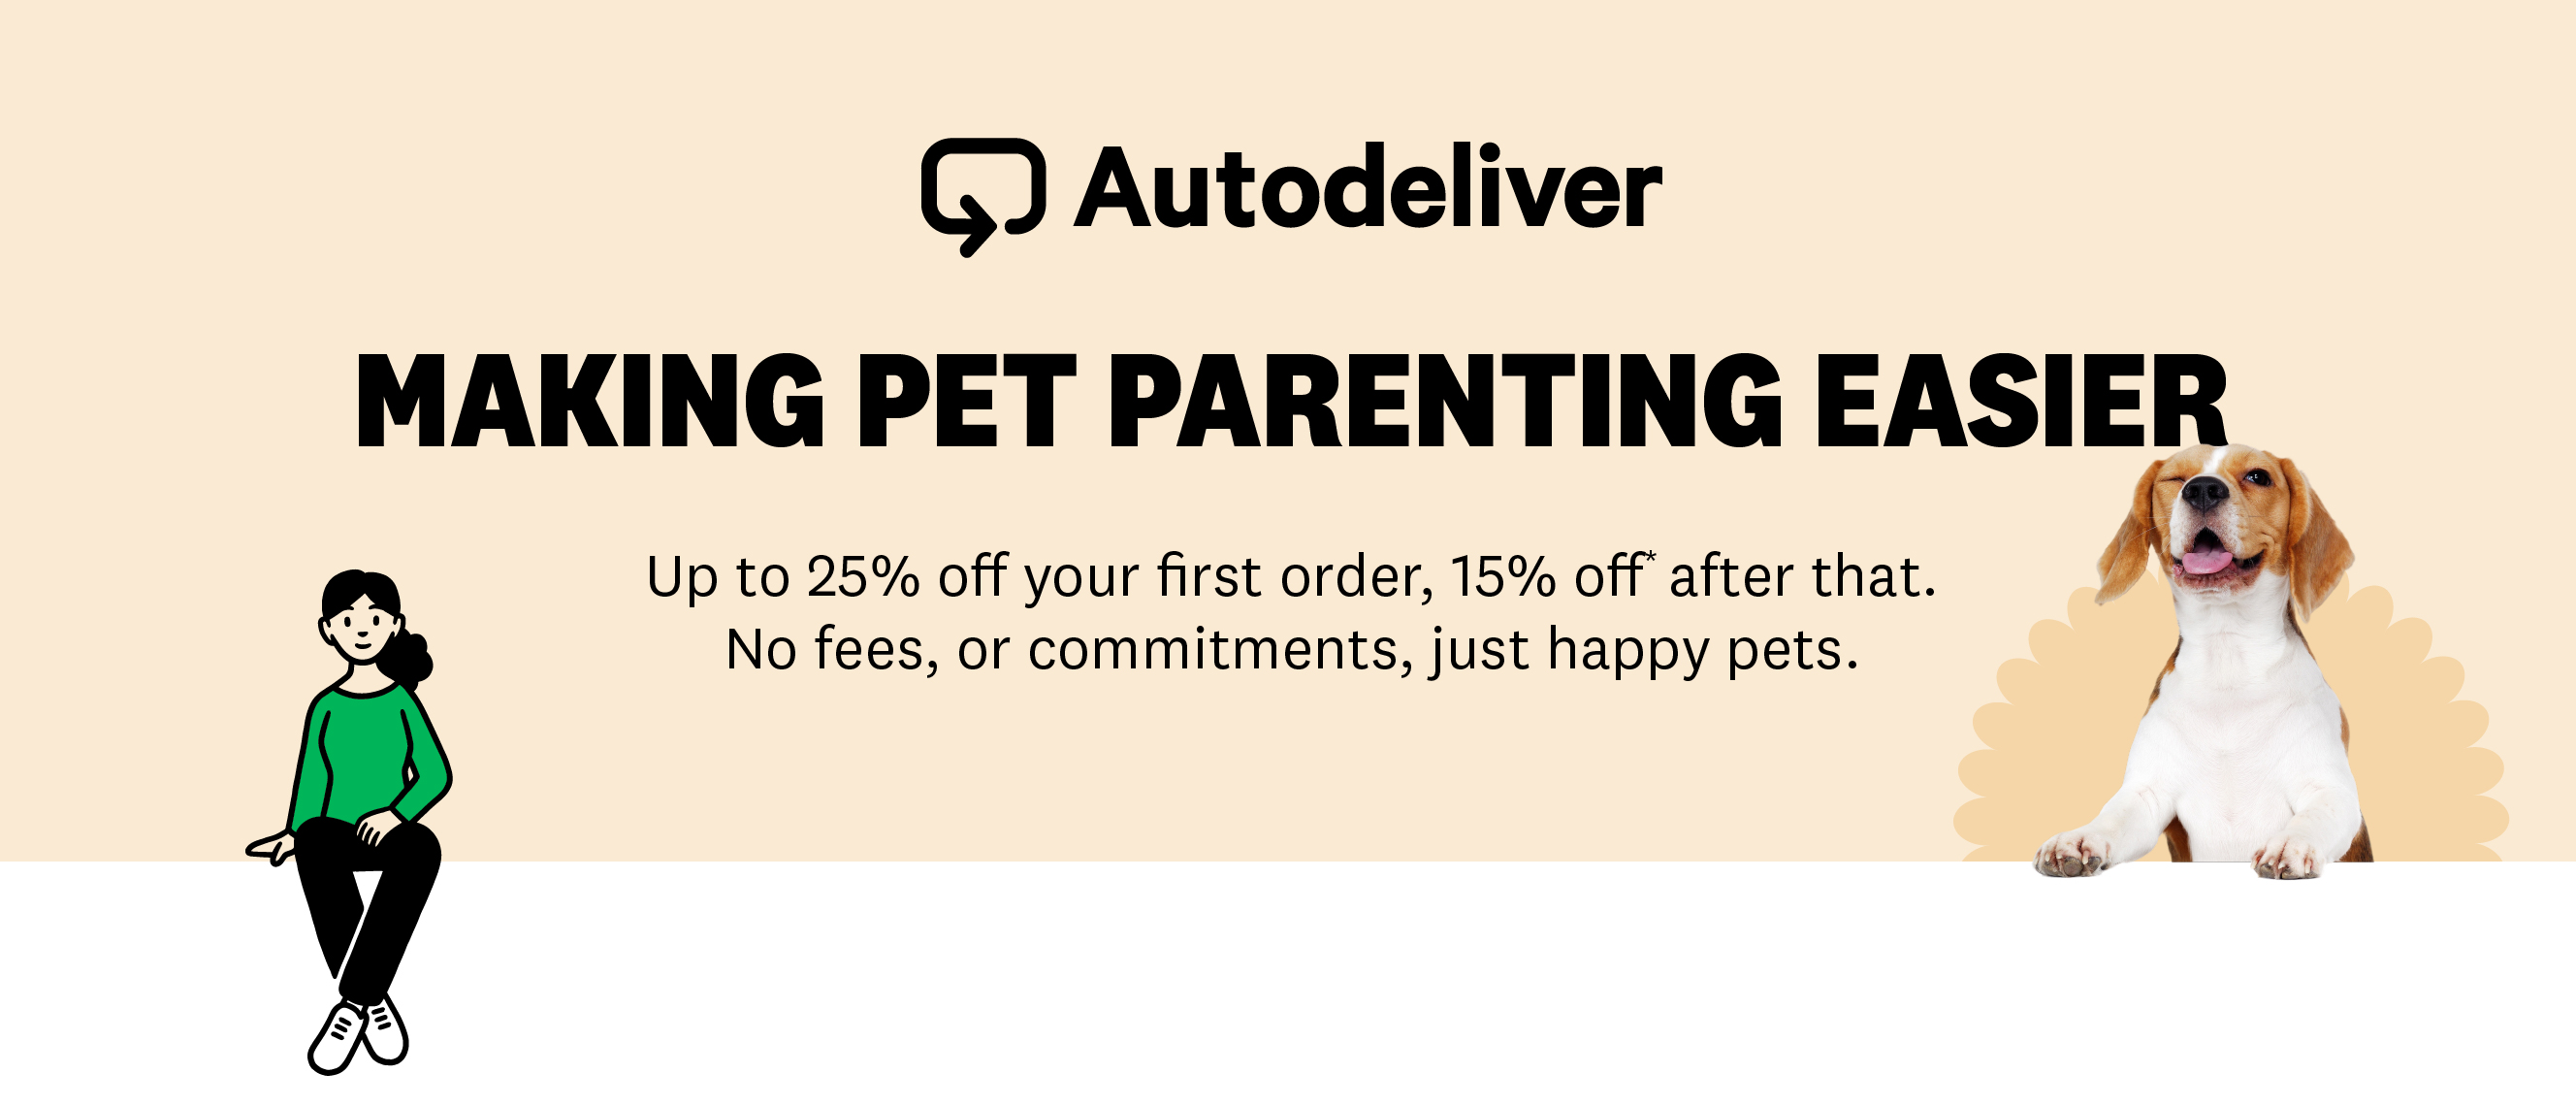 Autodeliver: Making Pet Parenting Easier